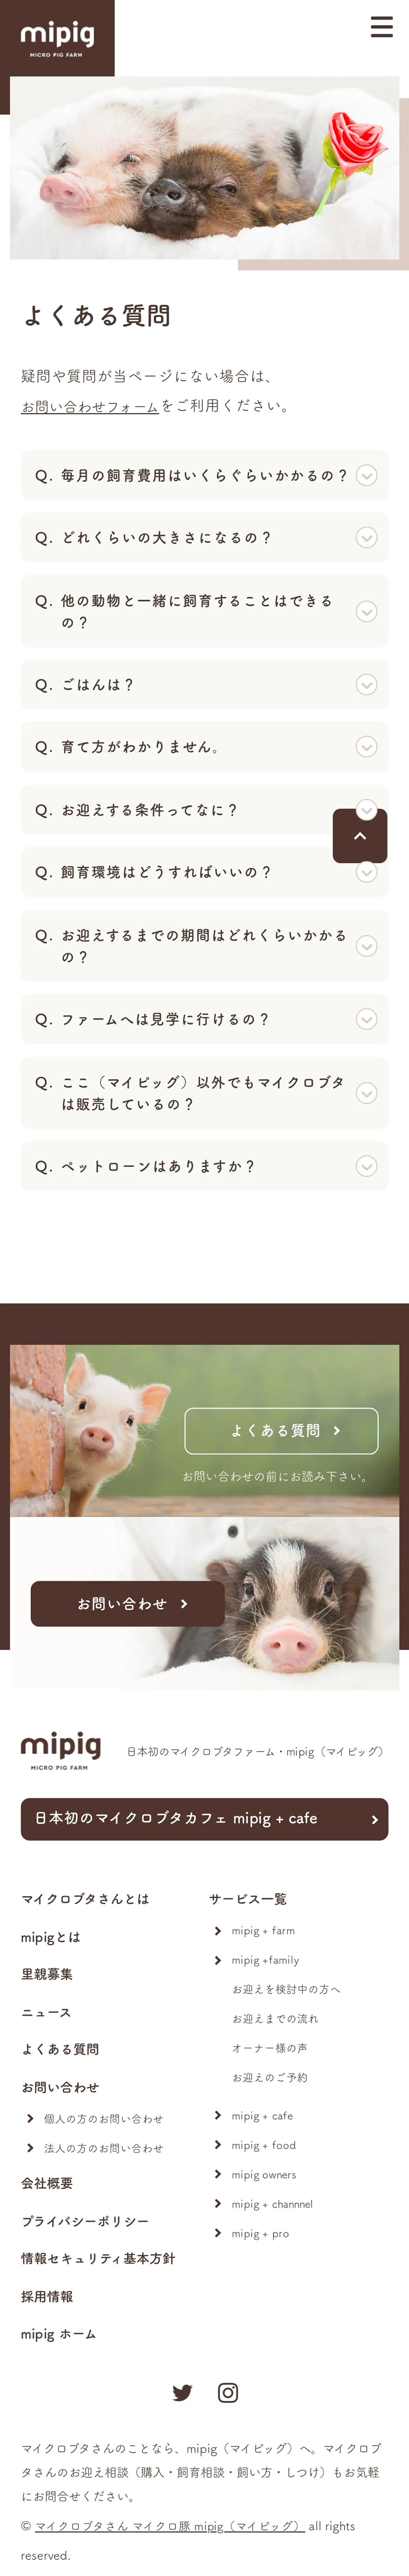 キャプチャ画面 会社名:株式会社SaLaDaプロジェクト名:mipig　MICRO PIG FARM 画面名:質問・Q&A デバイス名:SPカテゴリ:動物・ペットタグ:SP,質問・Q&A